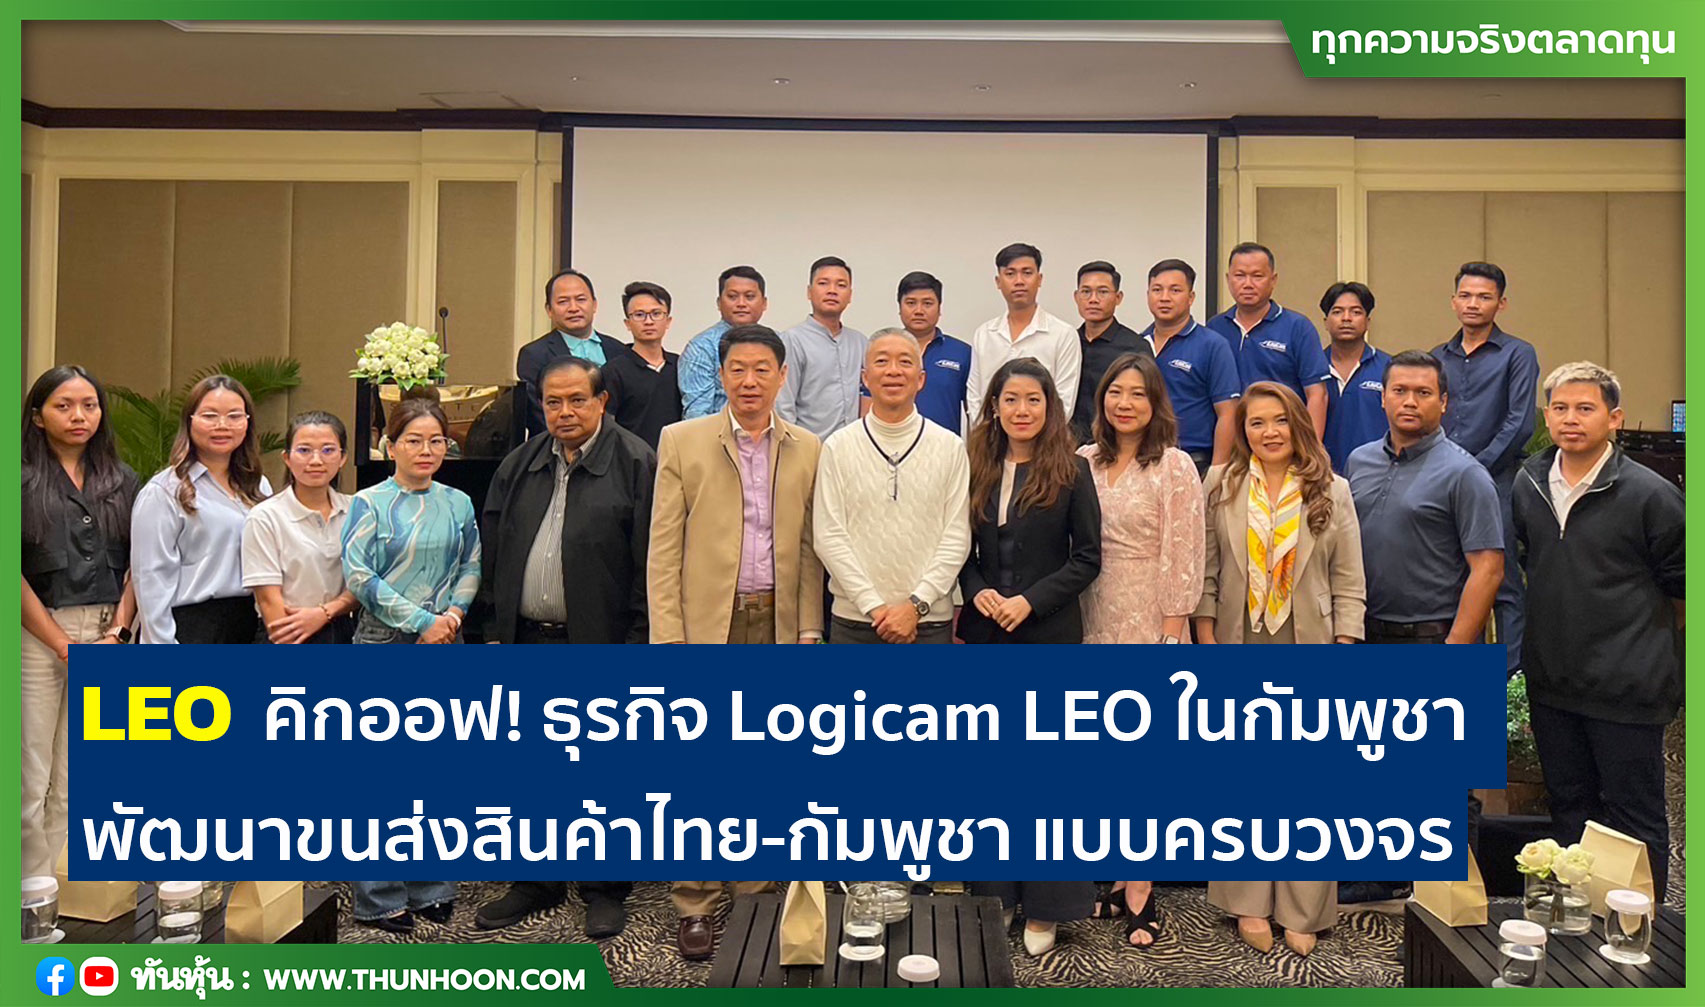 LEO คิกออฟ! ธุรกิจ Logicam LEO ในกัมพูชา พัฒนาขนส่งสินค้าแบบครบวงจร